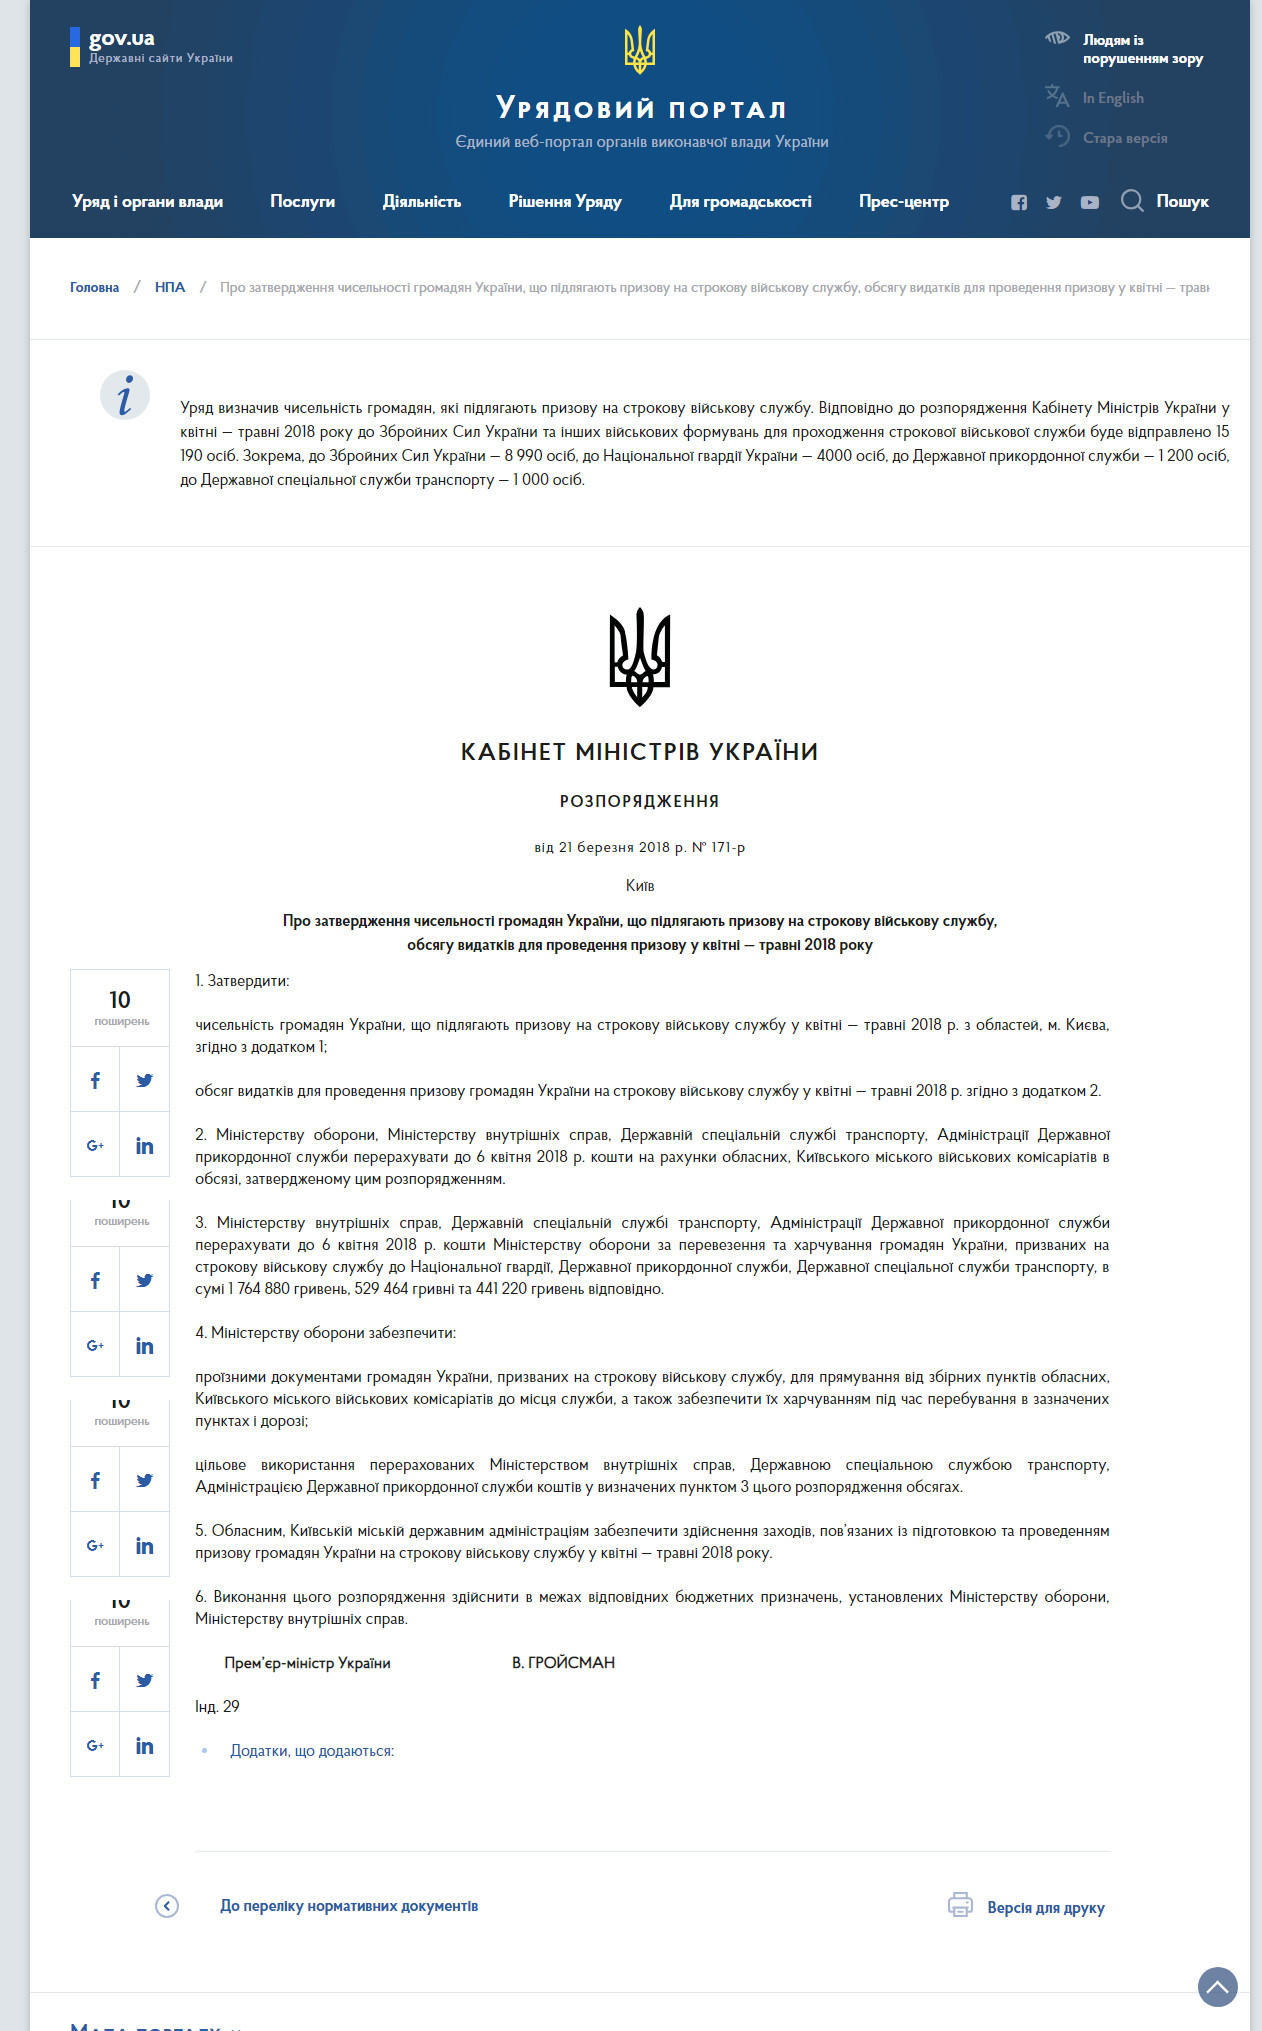 https://www.kmu.gov.ua/ua/npas/pro-zatverdzhennya-chis